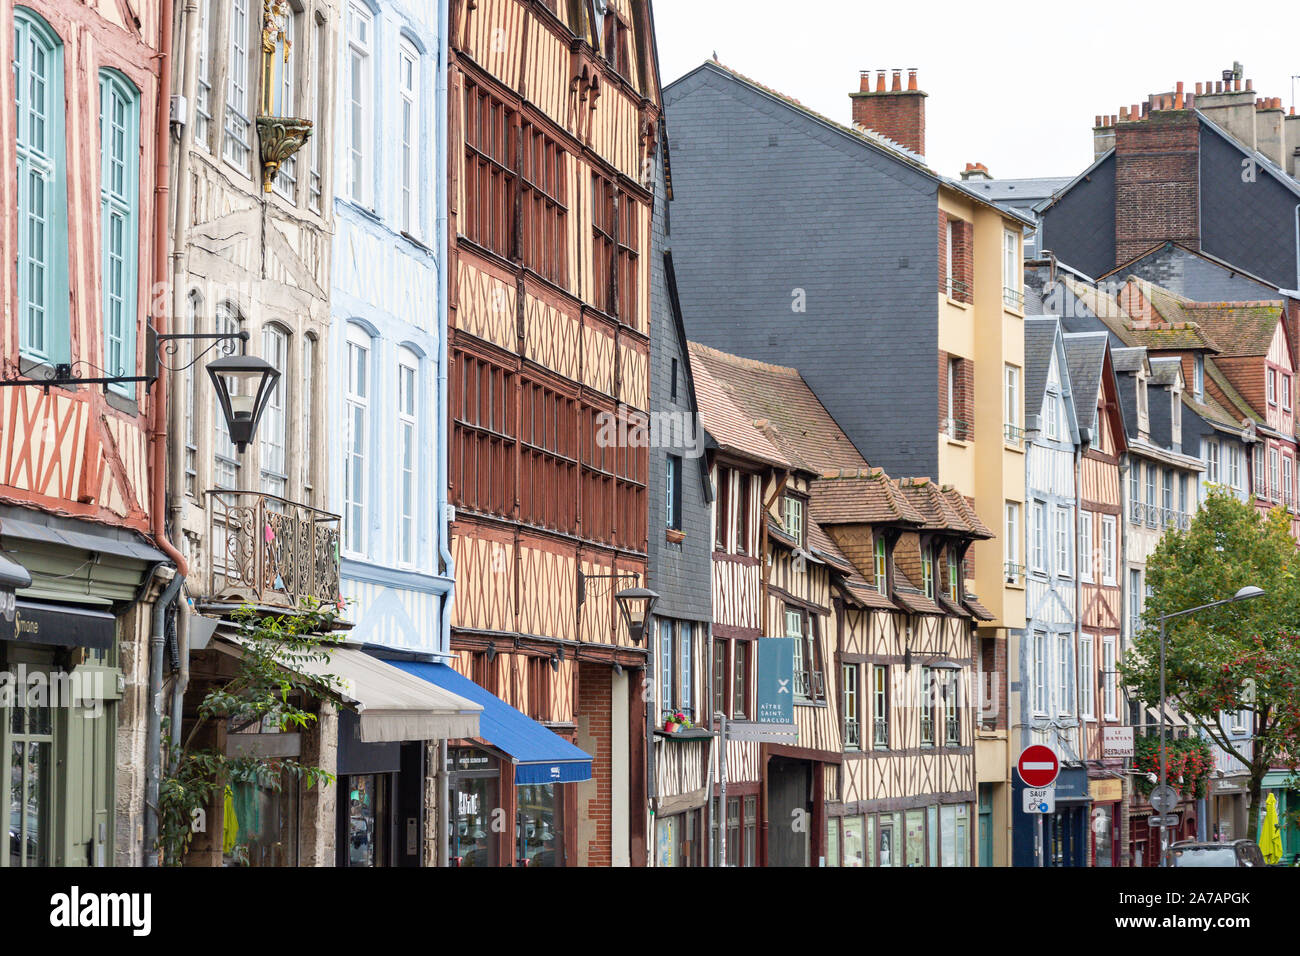 Historische Fachwerkhäuser, Rue Martainville, Rouen, Normandie, Frankreich Stockfoto